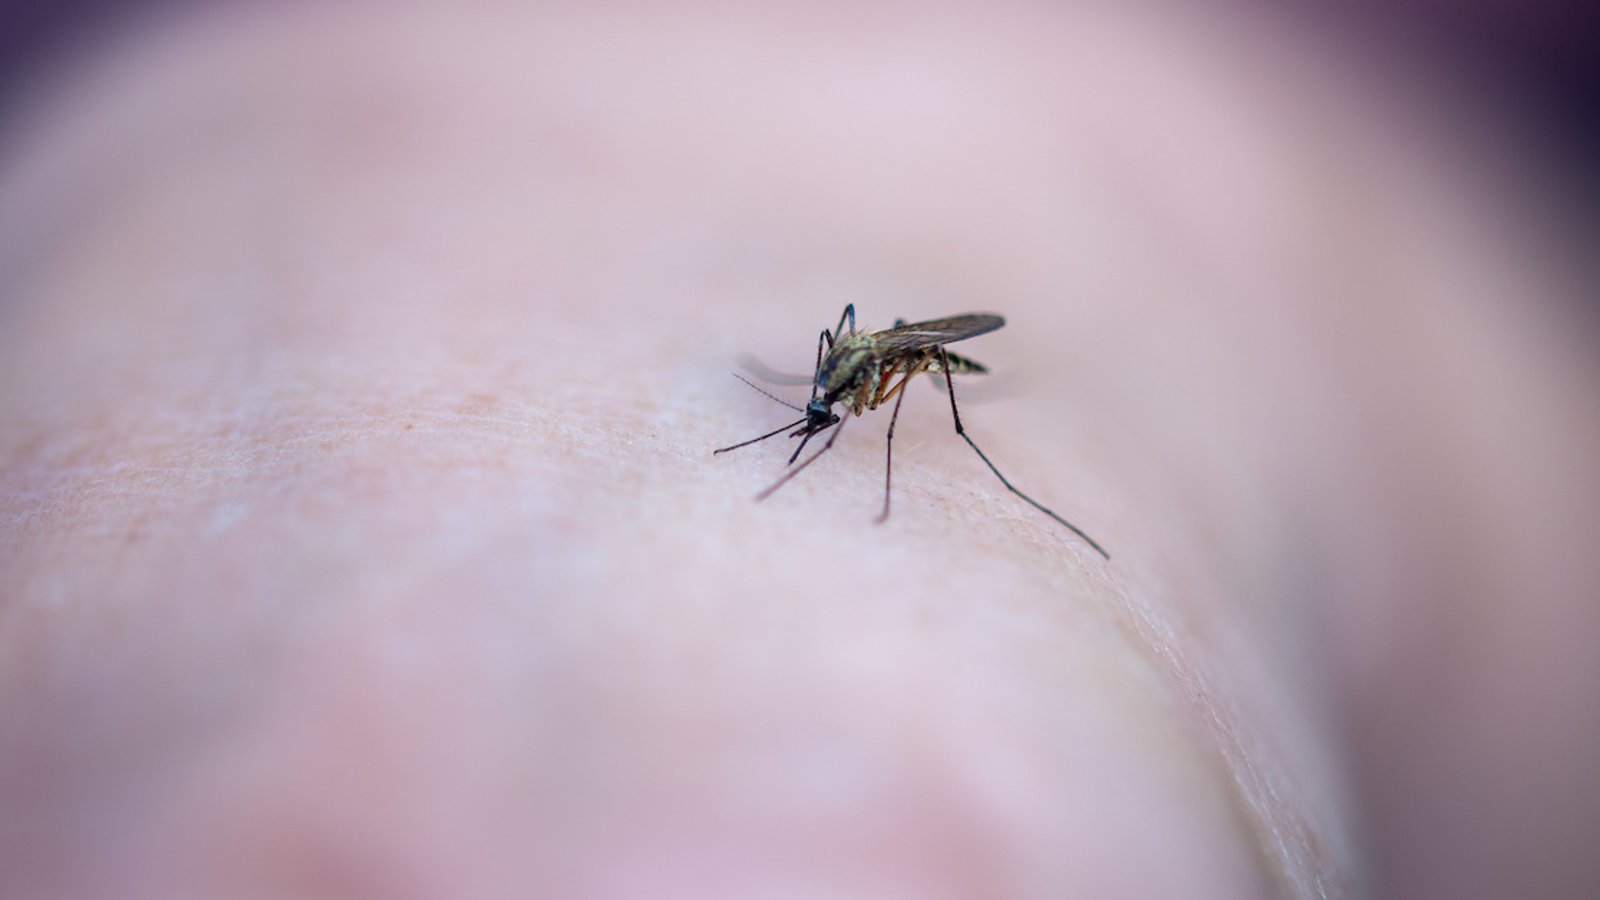 Selon un spécialiste, on devrait voir moins de moustiques cet été